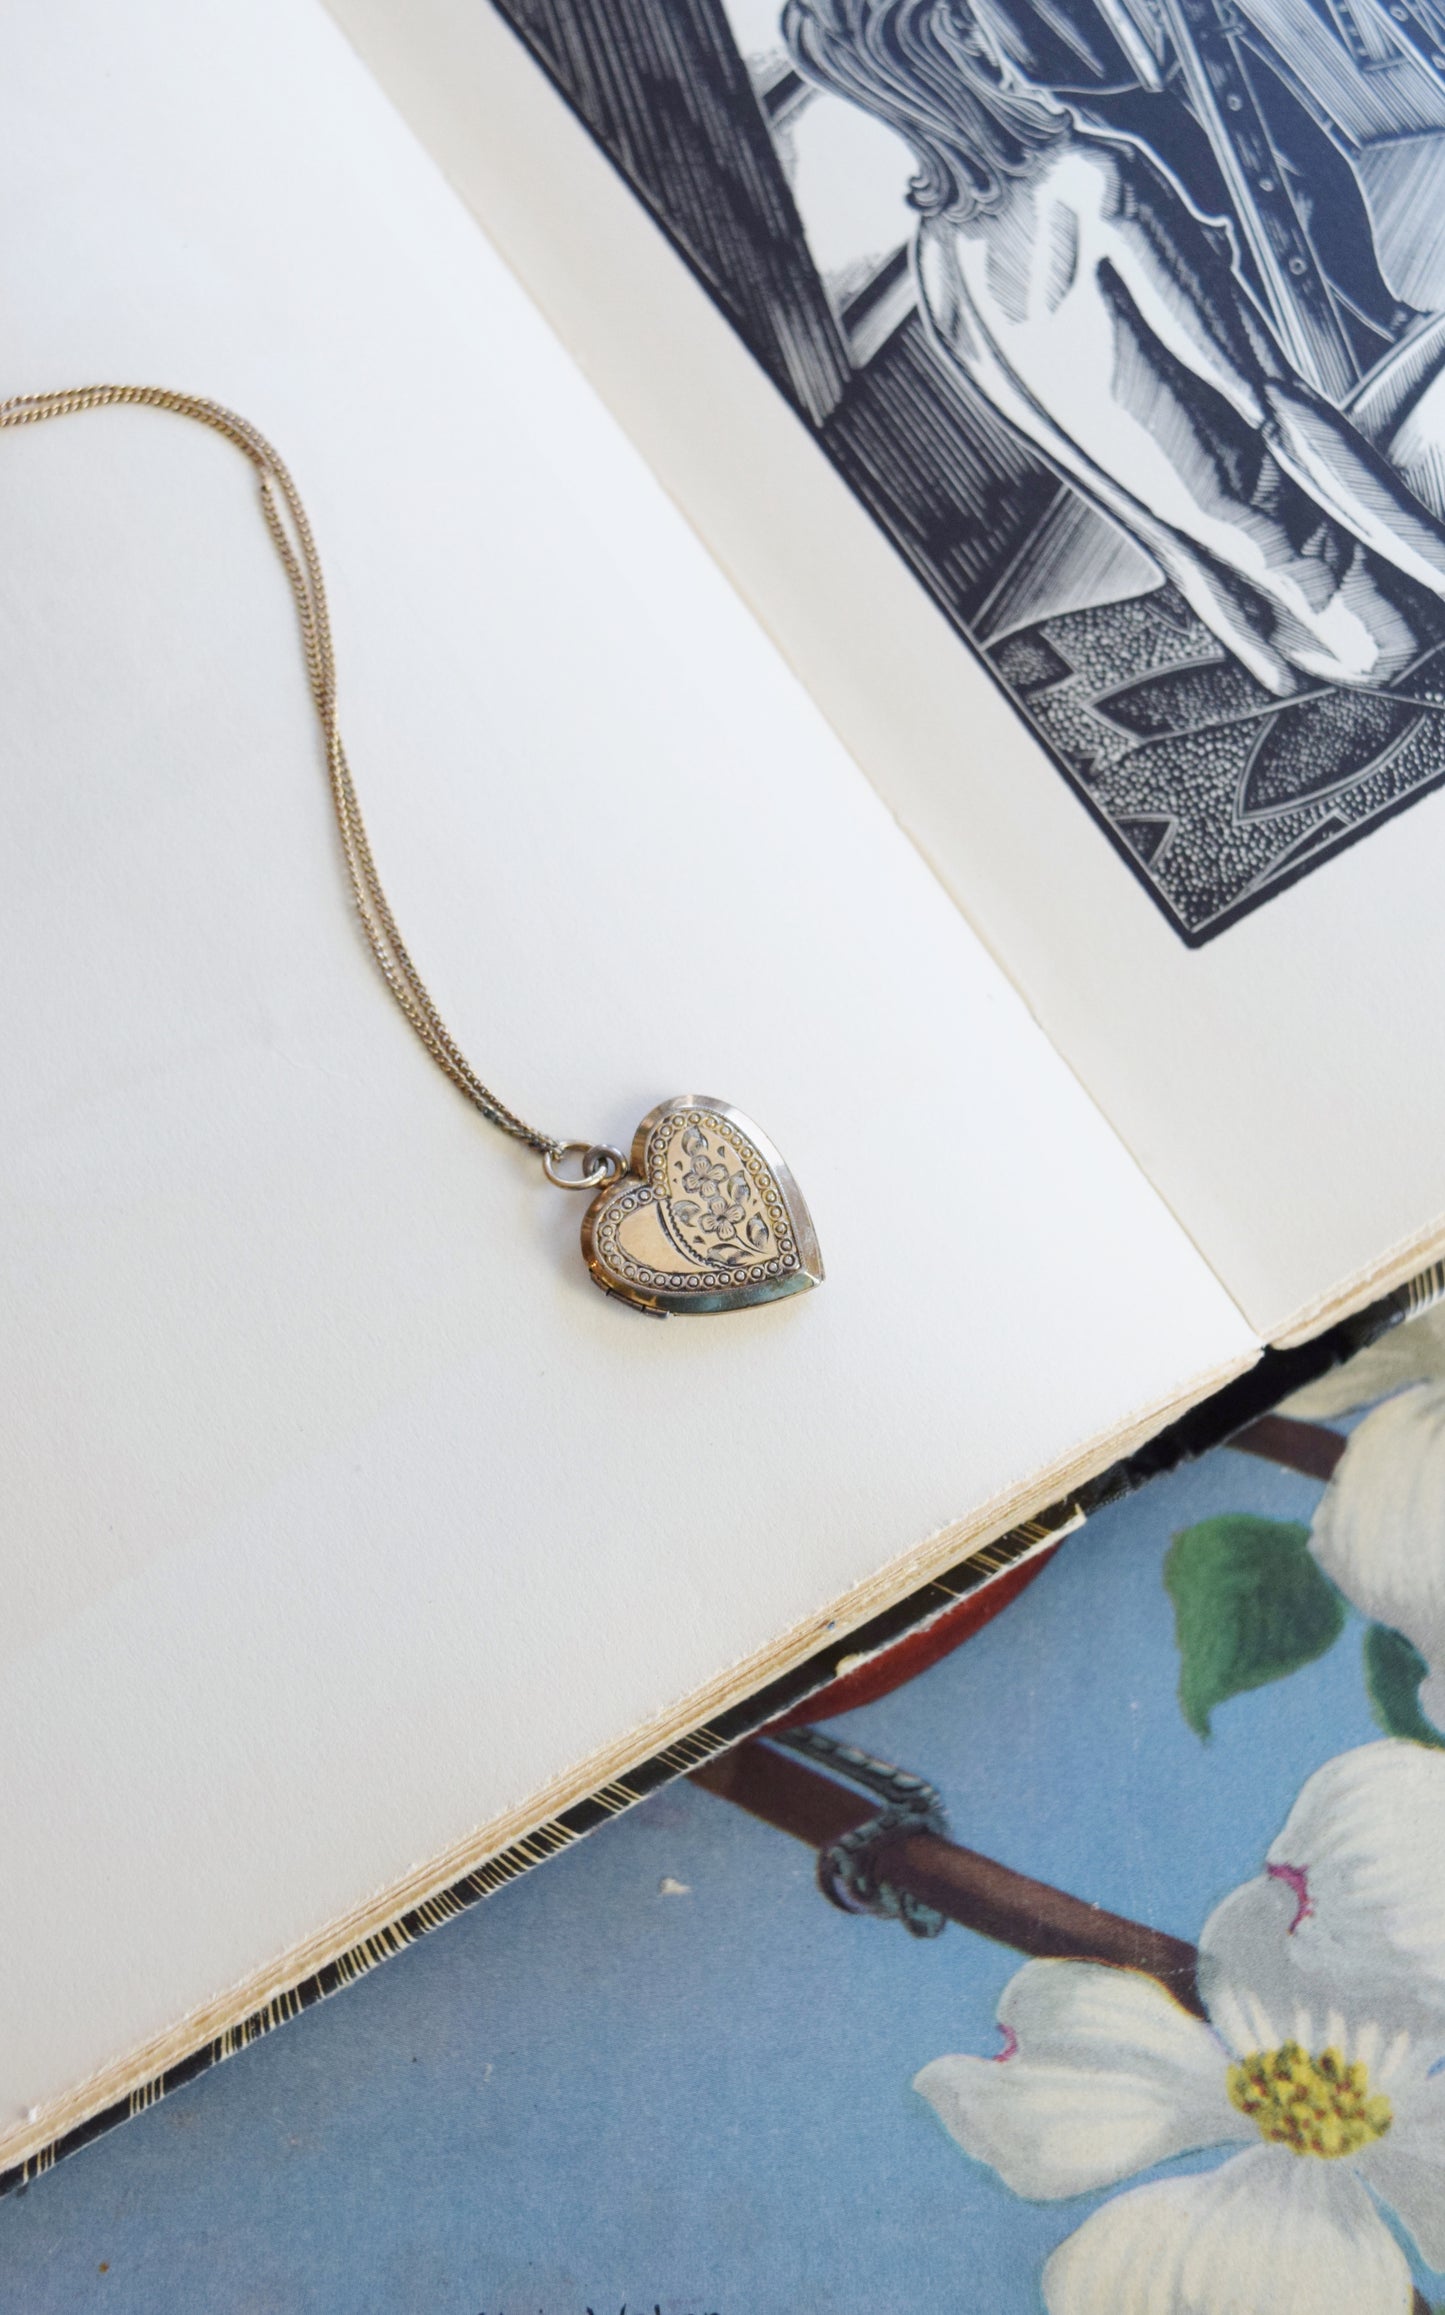 Vintage Gold Heart Shaped Locket Necklace